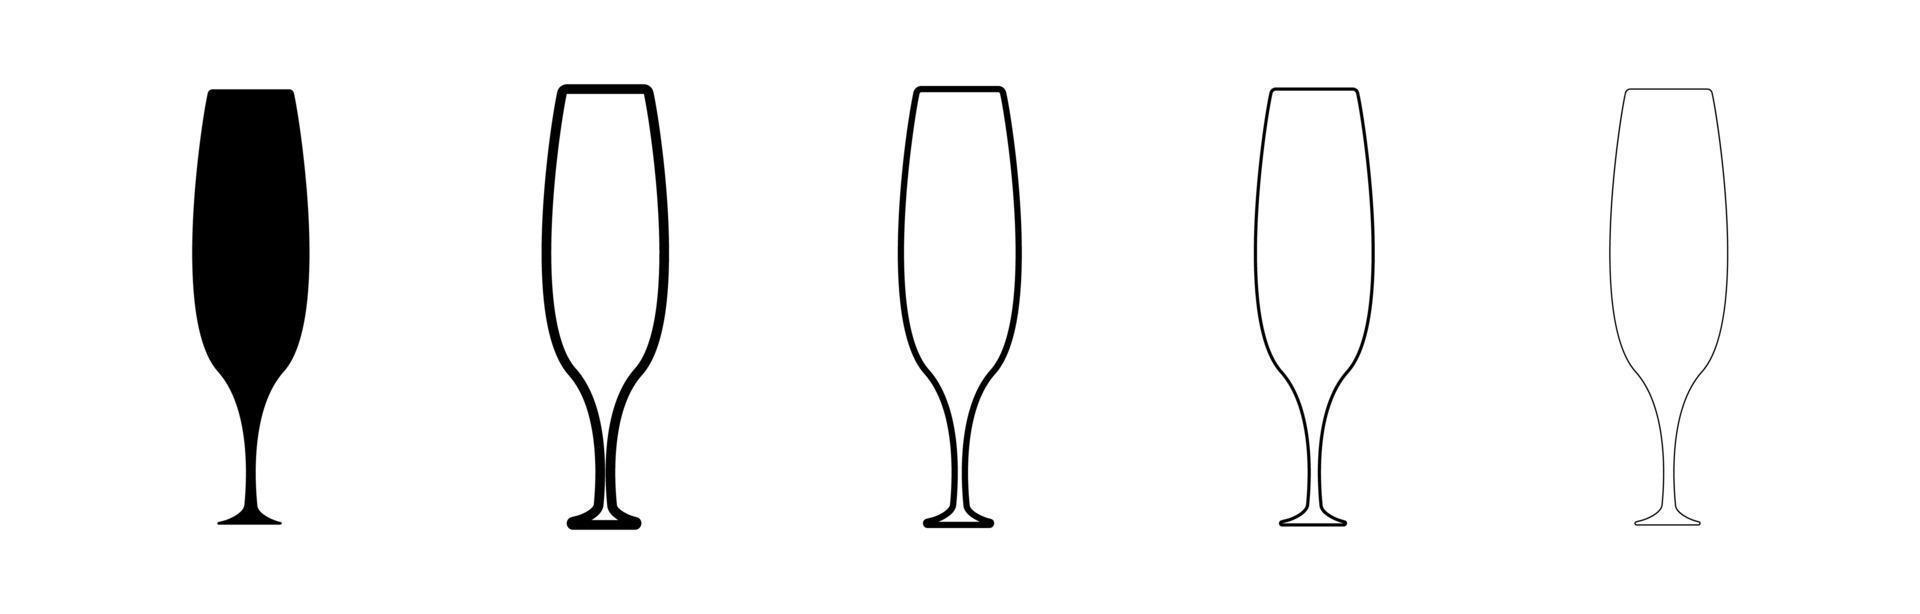 ensemble de silhouette de verres à vin. mince longue tasse. verres d'épaisseurs différentes. verre de couleur noire isolé sur fond blanc. jeu d'icônes de verre à boire silhouette. conception d'art en ligne moderne. vecteur